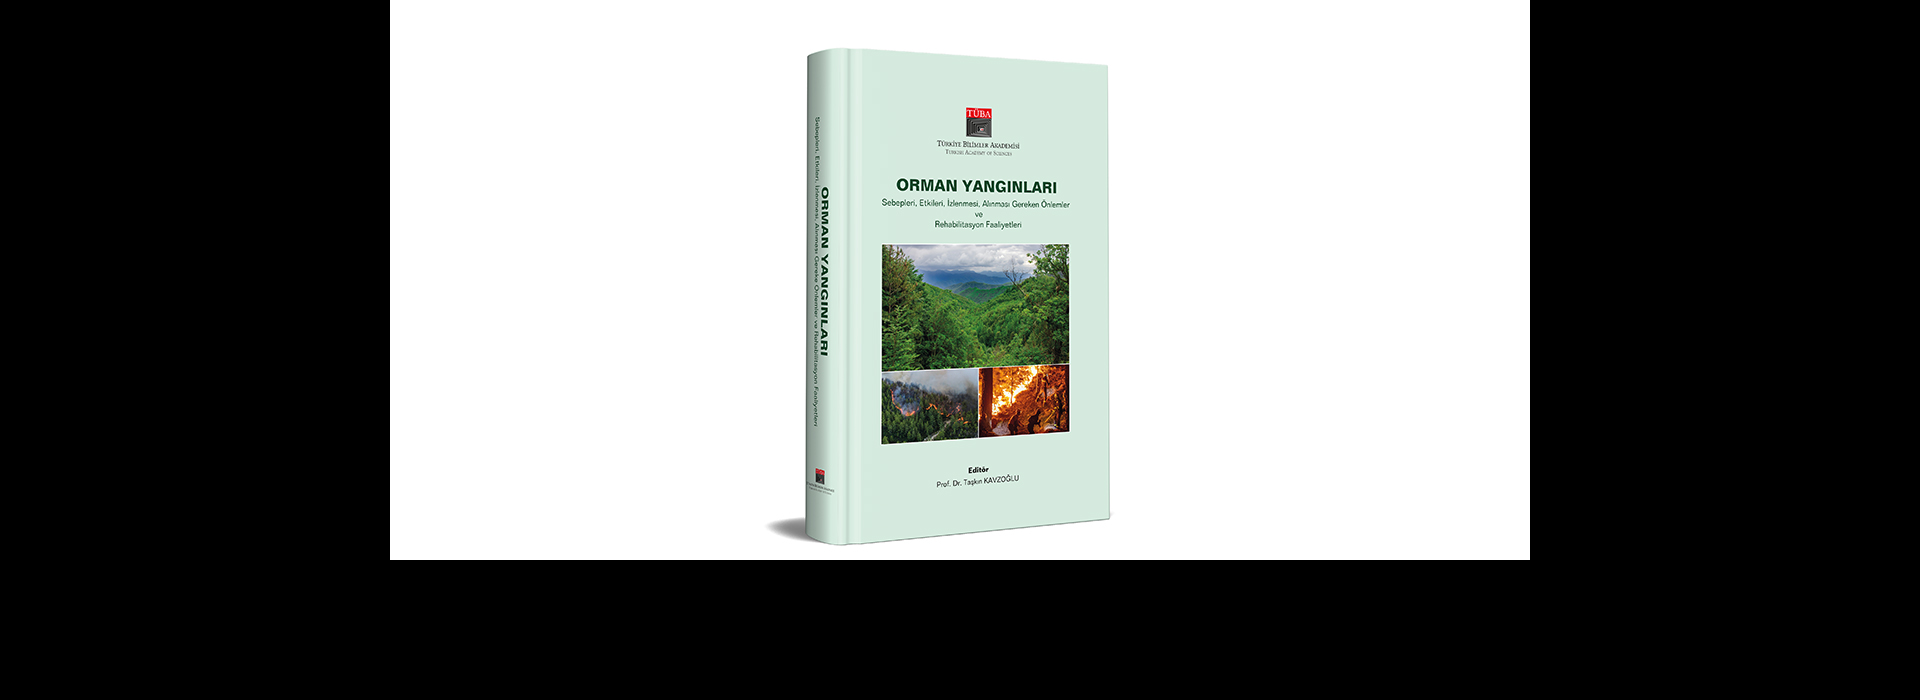 İklim Değişikliği ve Orman Yangınları İlişkisi TÜBA Kitabında